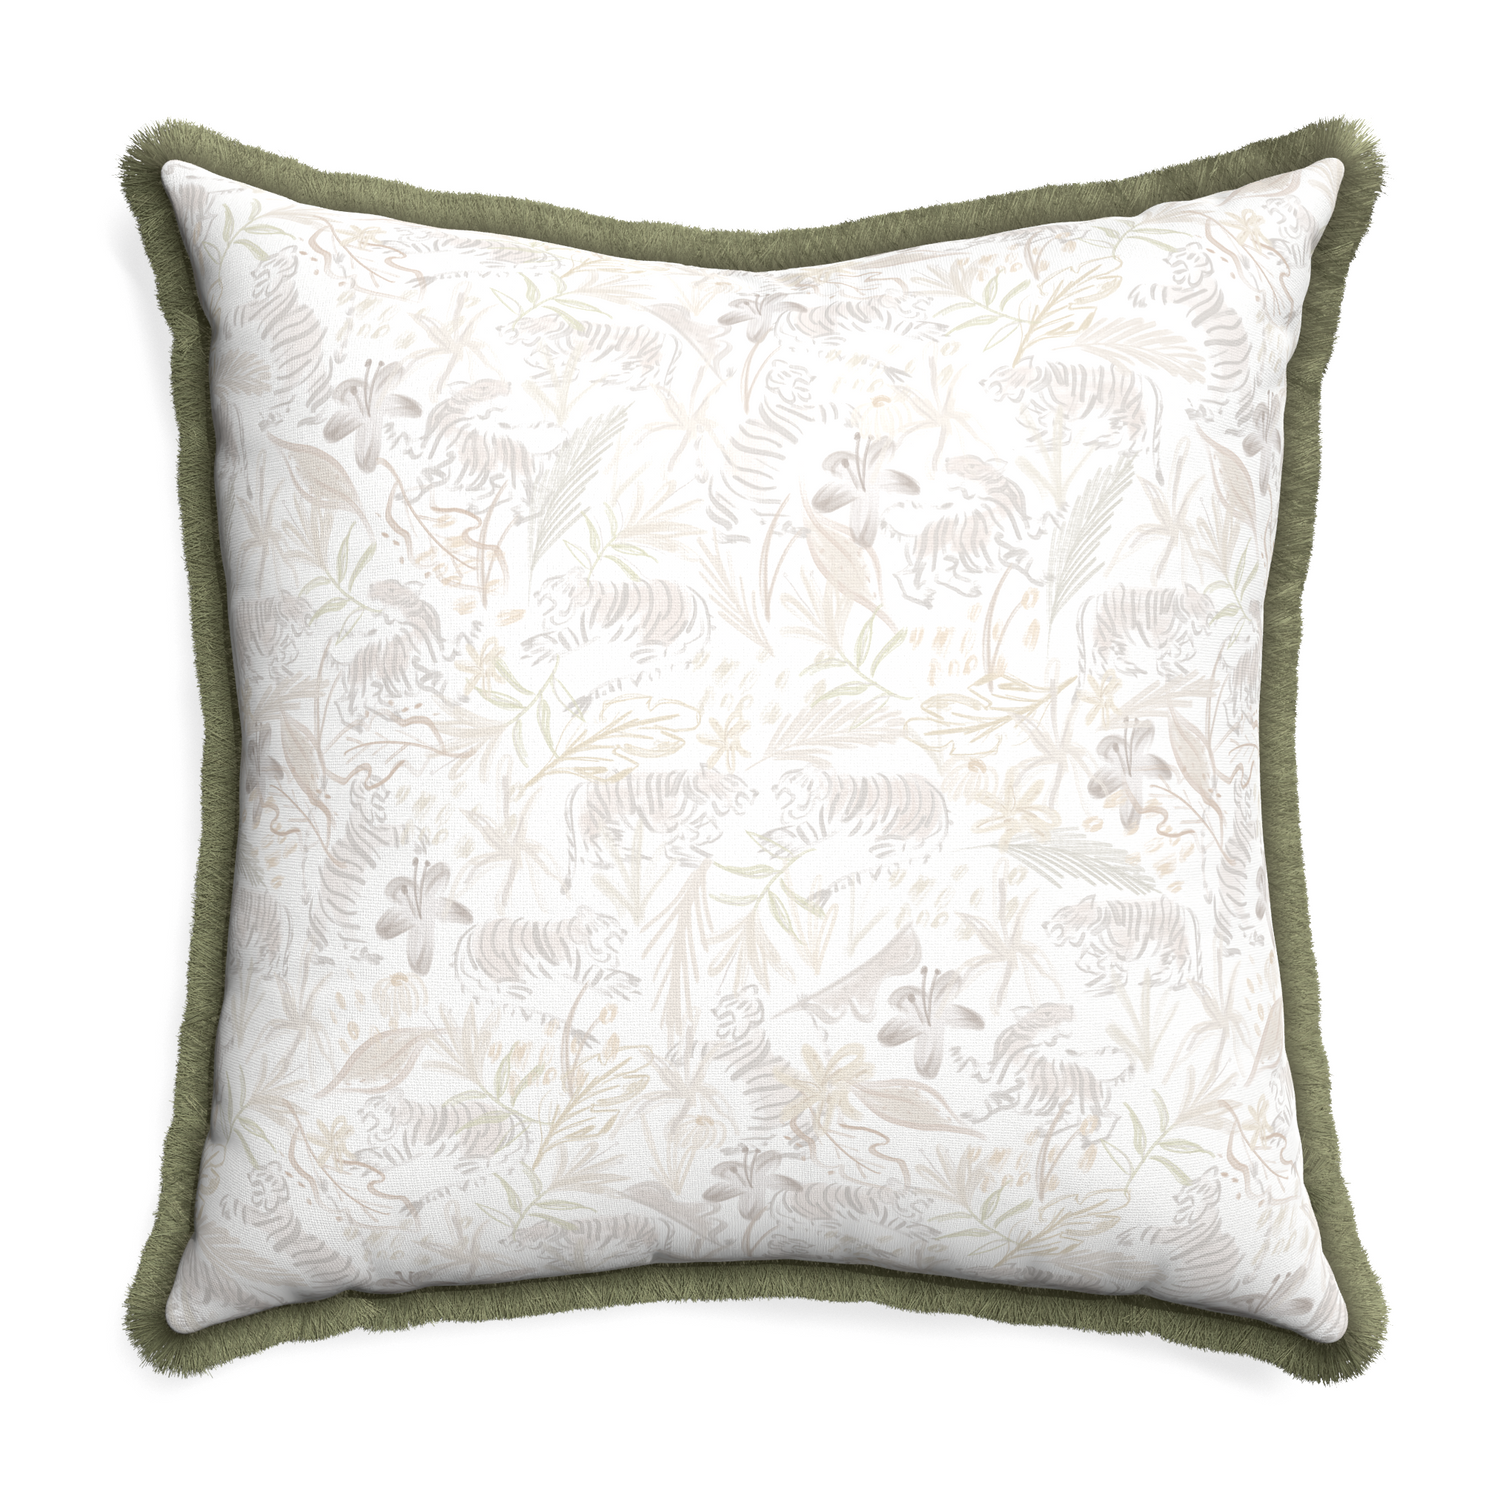 Euro-sham frida sand custom pillow with sage fringe on white background